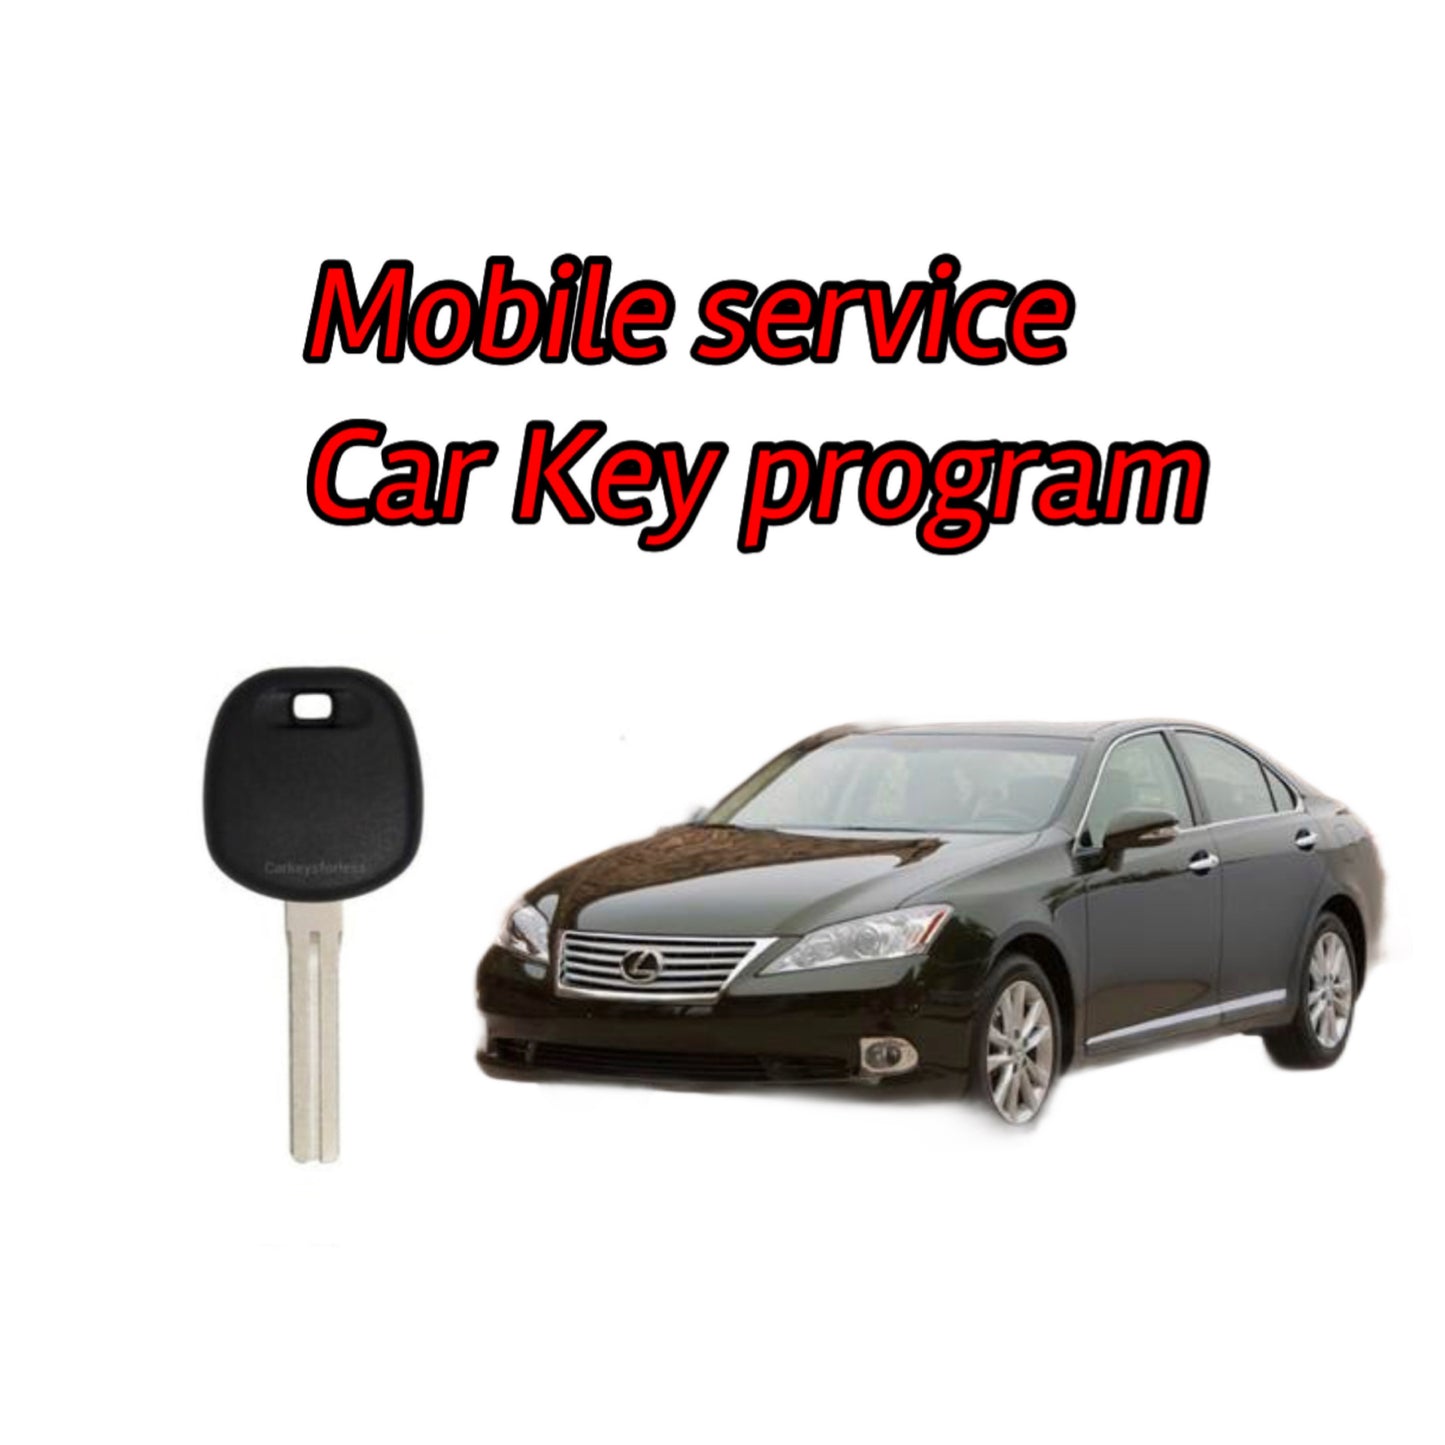 Mobiele diens vir Lexus alle sleutels verloor of spaar motorsleutel programmering